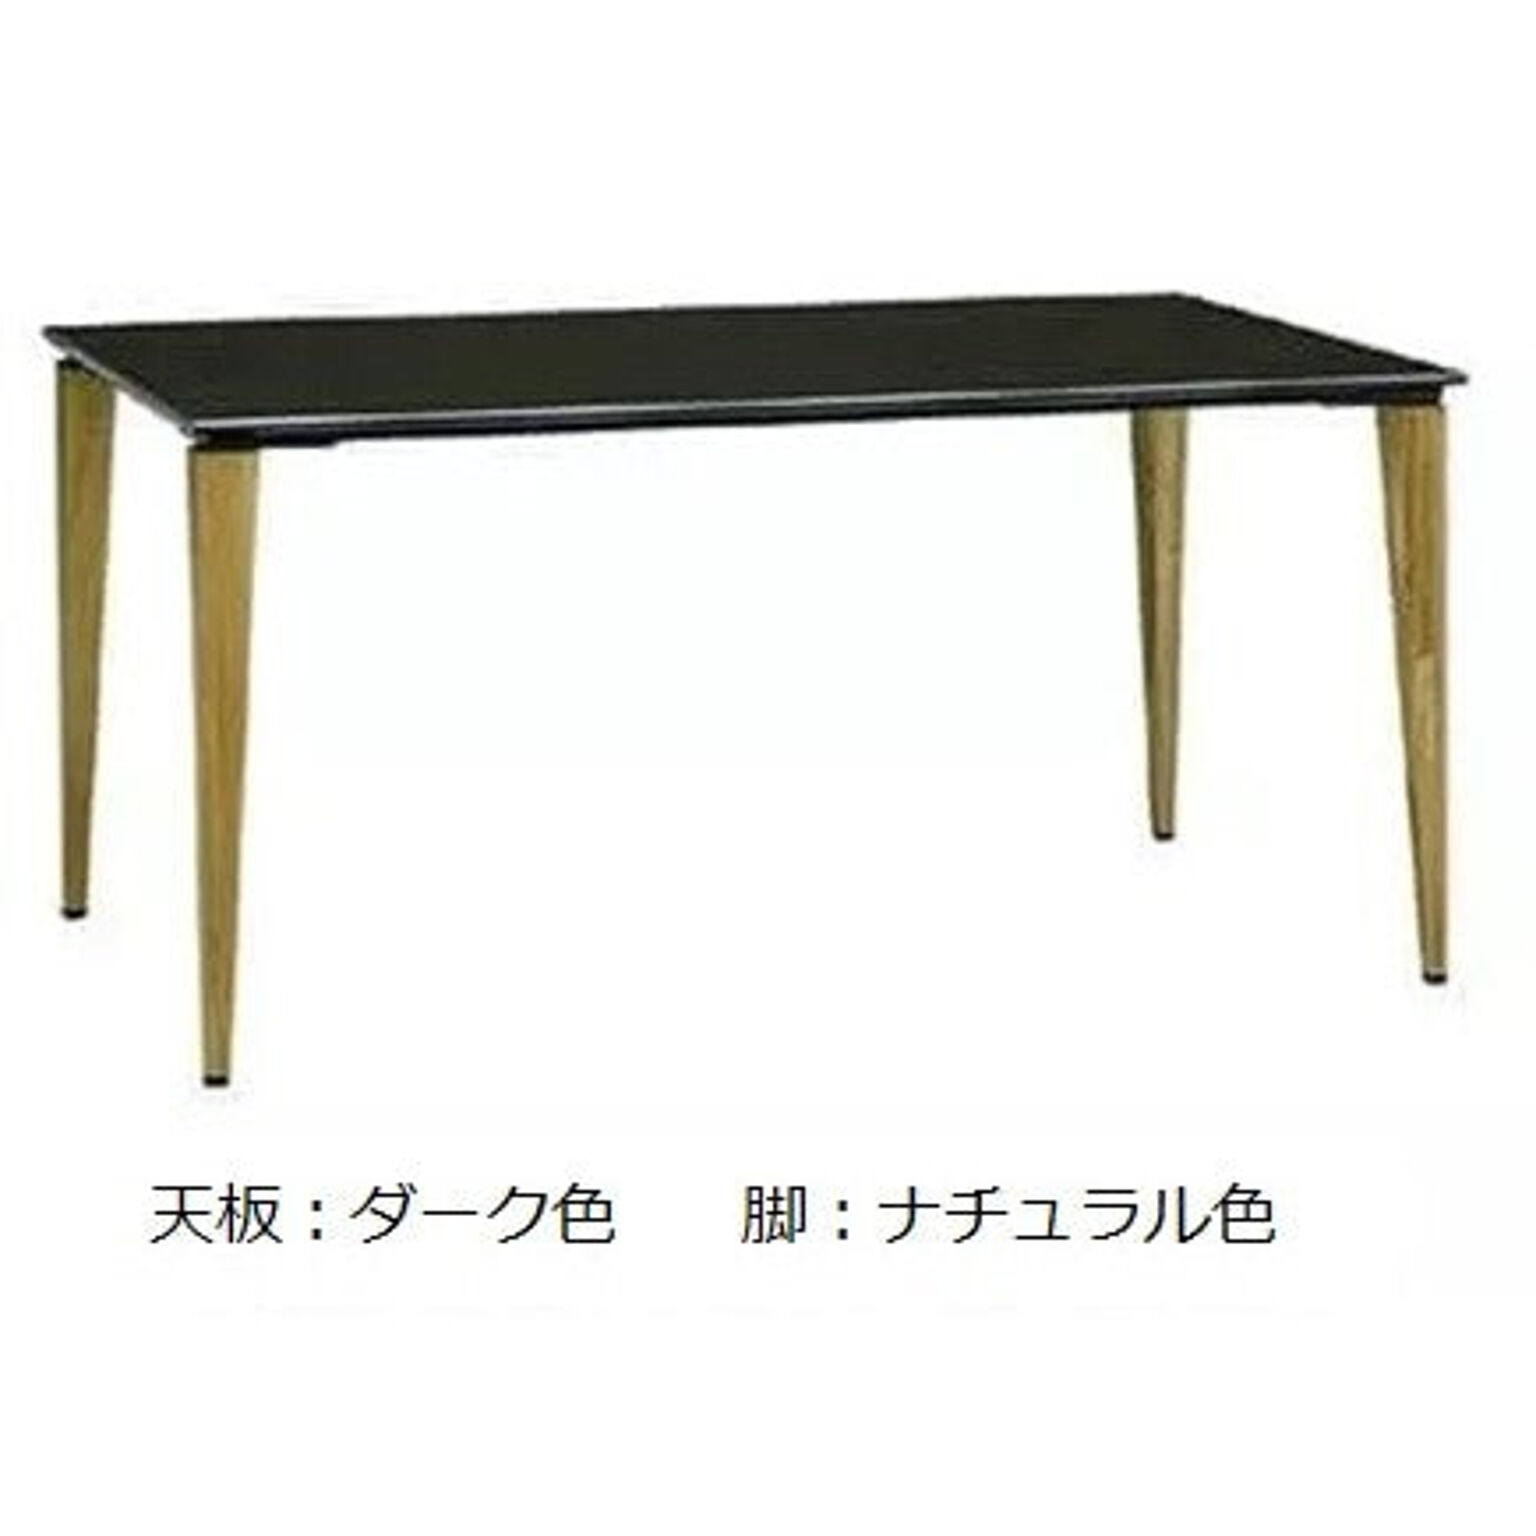 ダイニングテーブル カラー4色 幅135 奥行80 高さ71.5 長方形 食卓テーブル 作業テーブル DUAL-NUOVO デュアル・ヌーボ DULNT-135 MAEDA FUNITURE